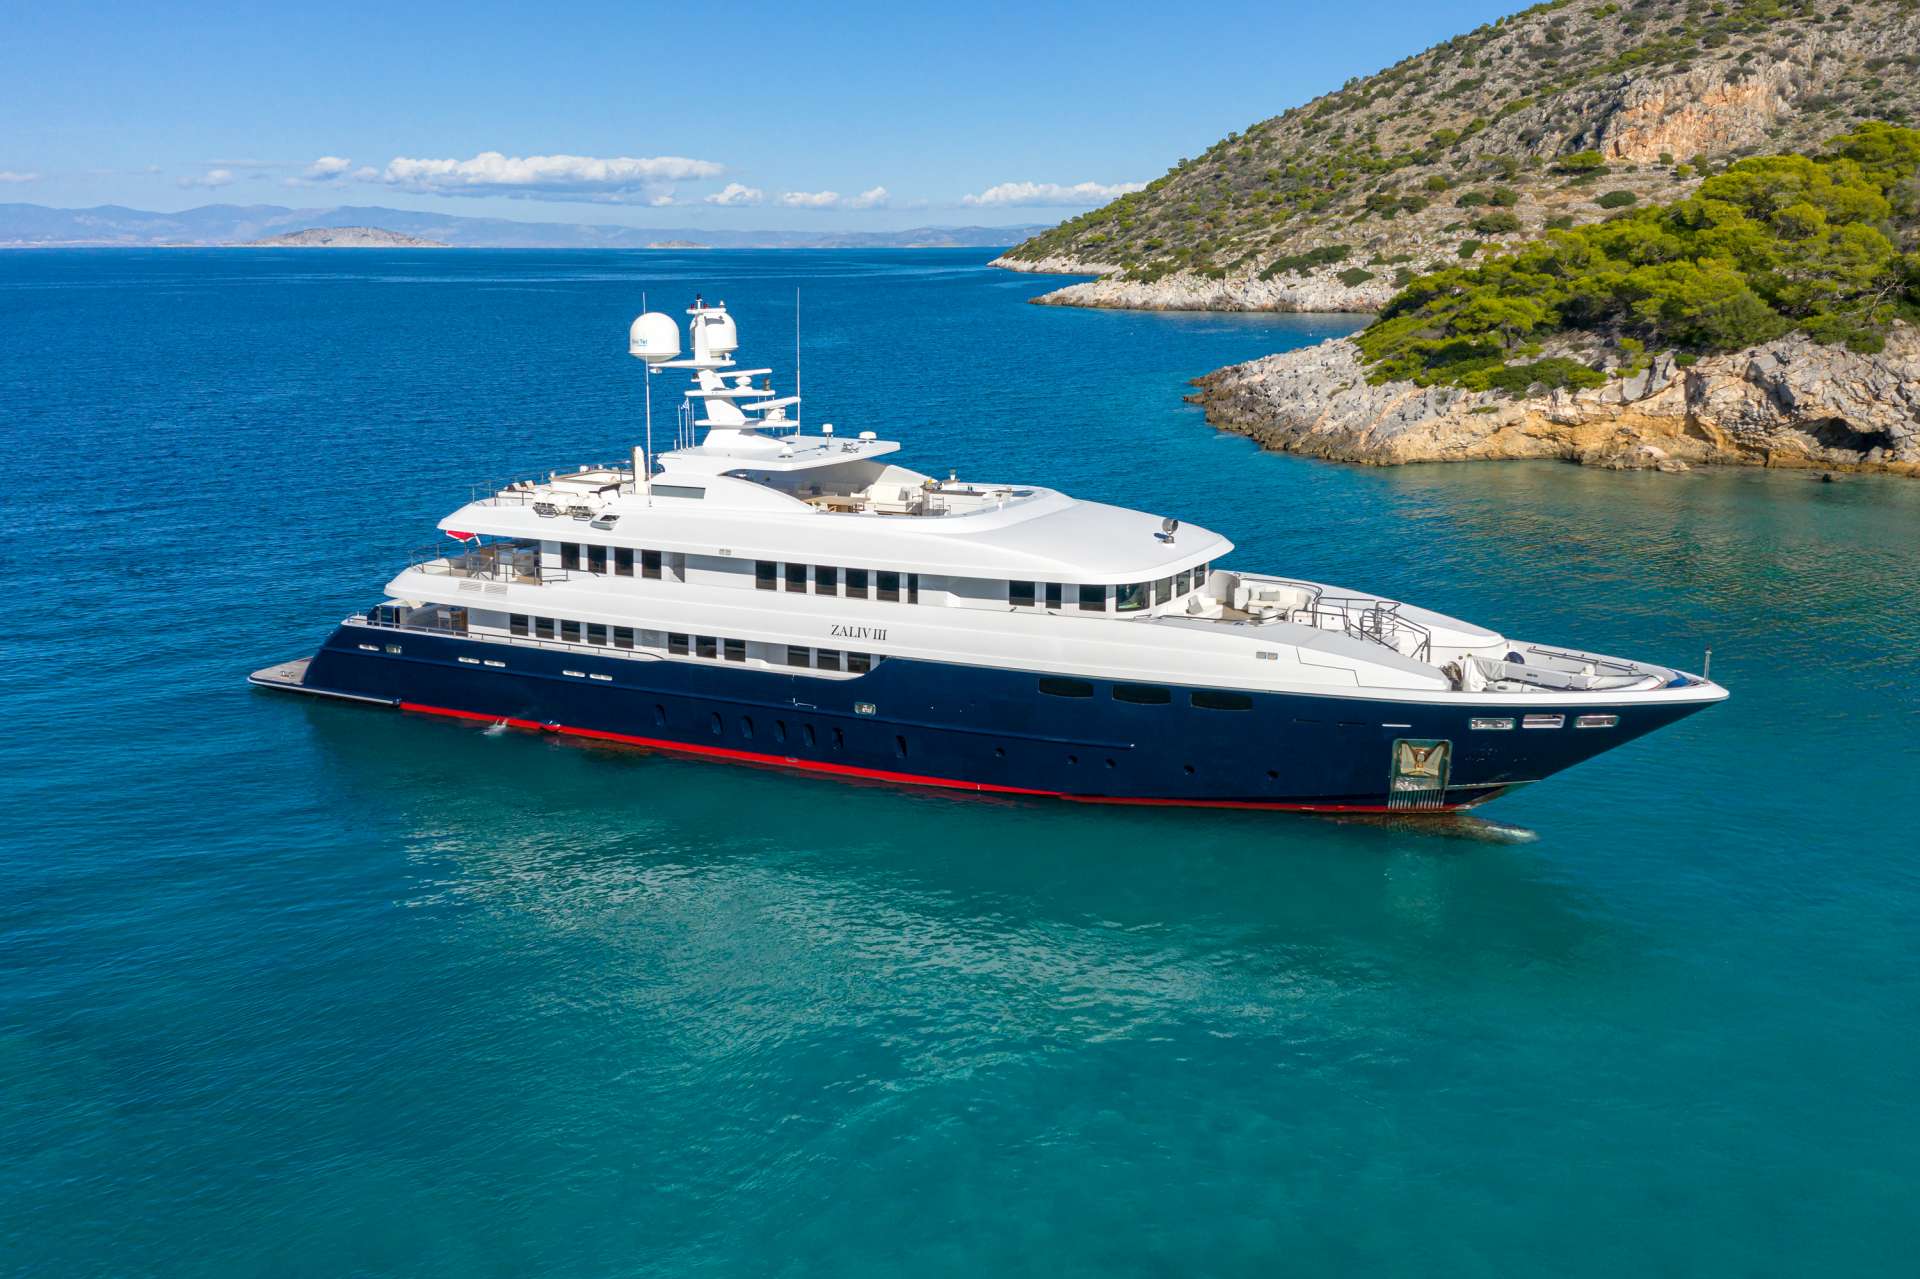 zaliv iii - Yacht Charter Portorož & Boat hire in East Mediterranean 1